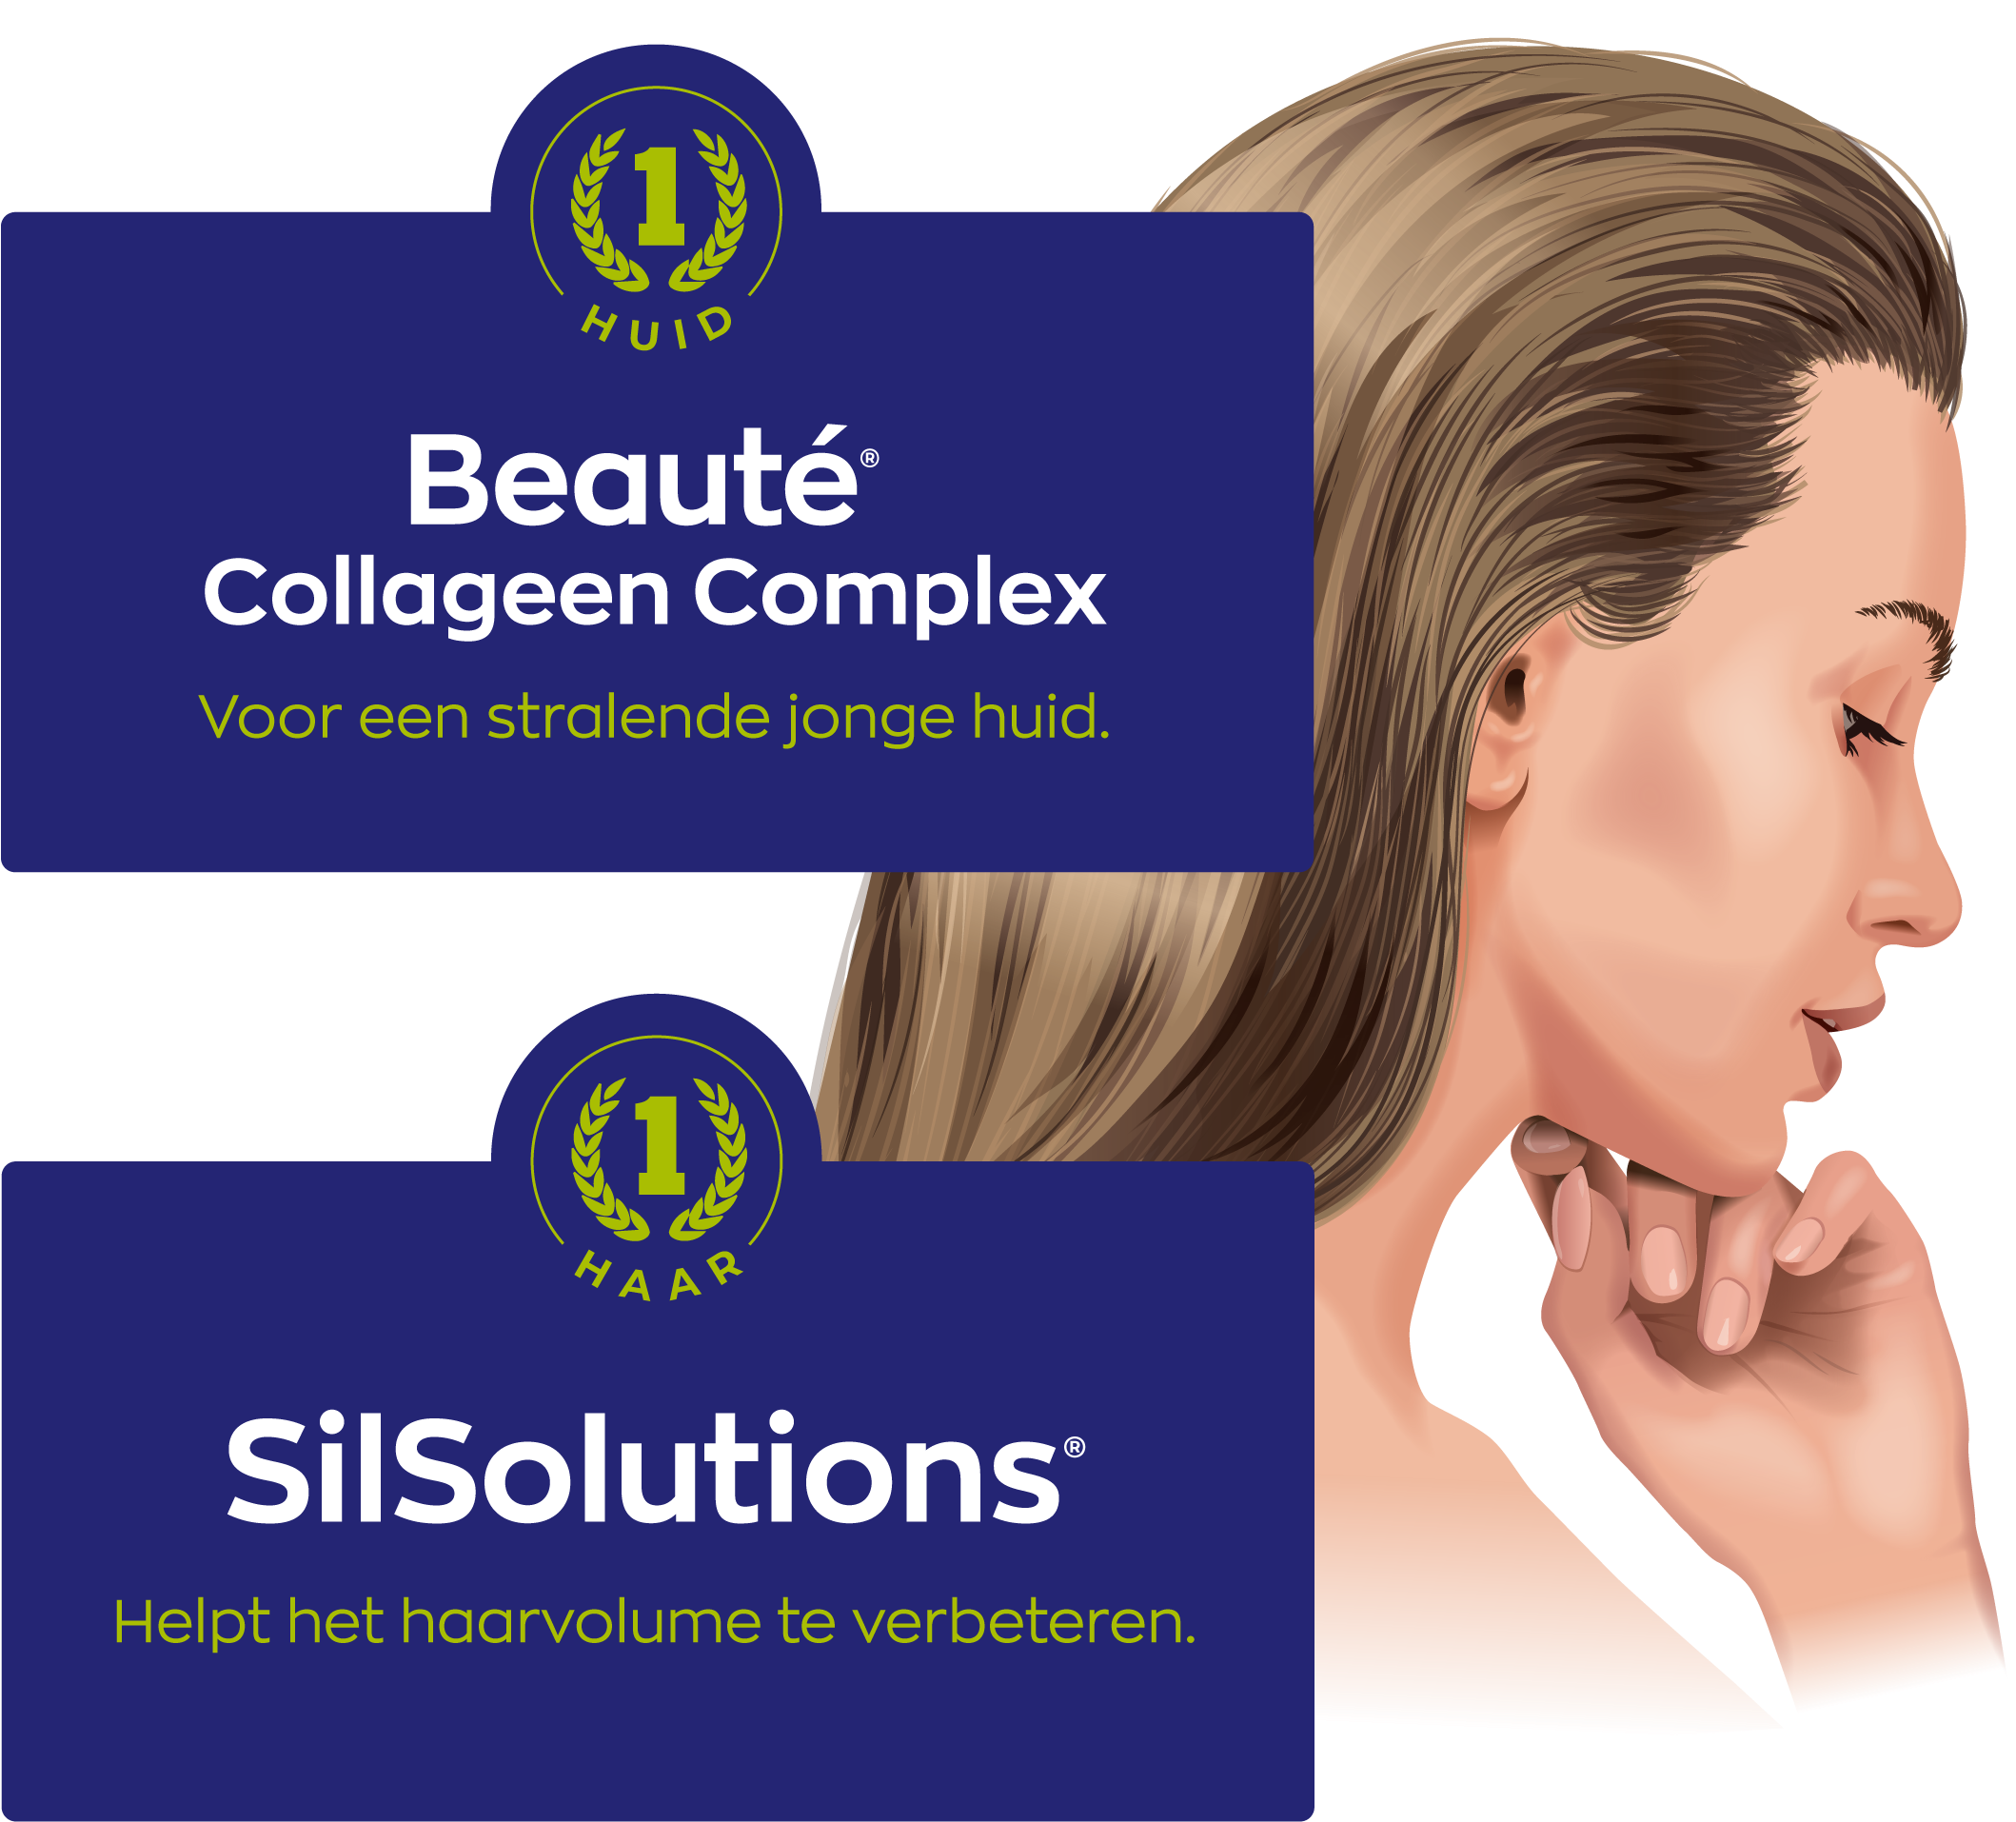 afbeelding met twee producten: Beauté Collageen Complex en SilSolutions. Het Beauté Collageen Complex is voor een stralende jonge huid. SilSolutions helpt het haarvolume te verbeteren. 